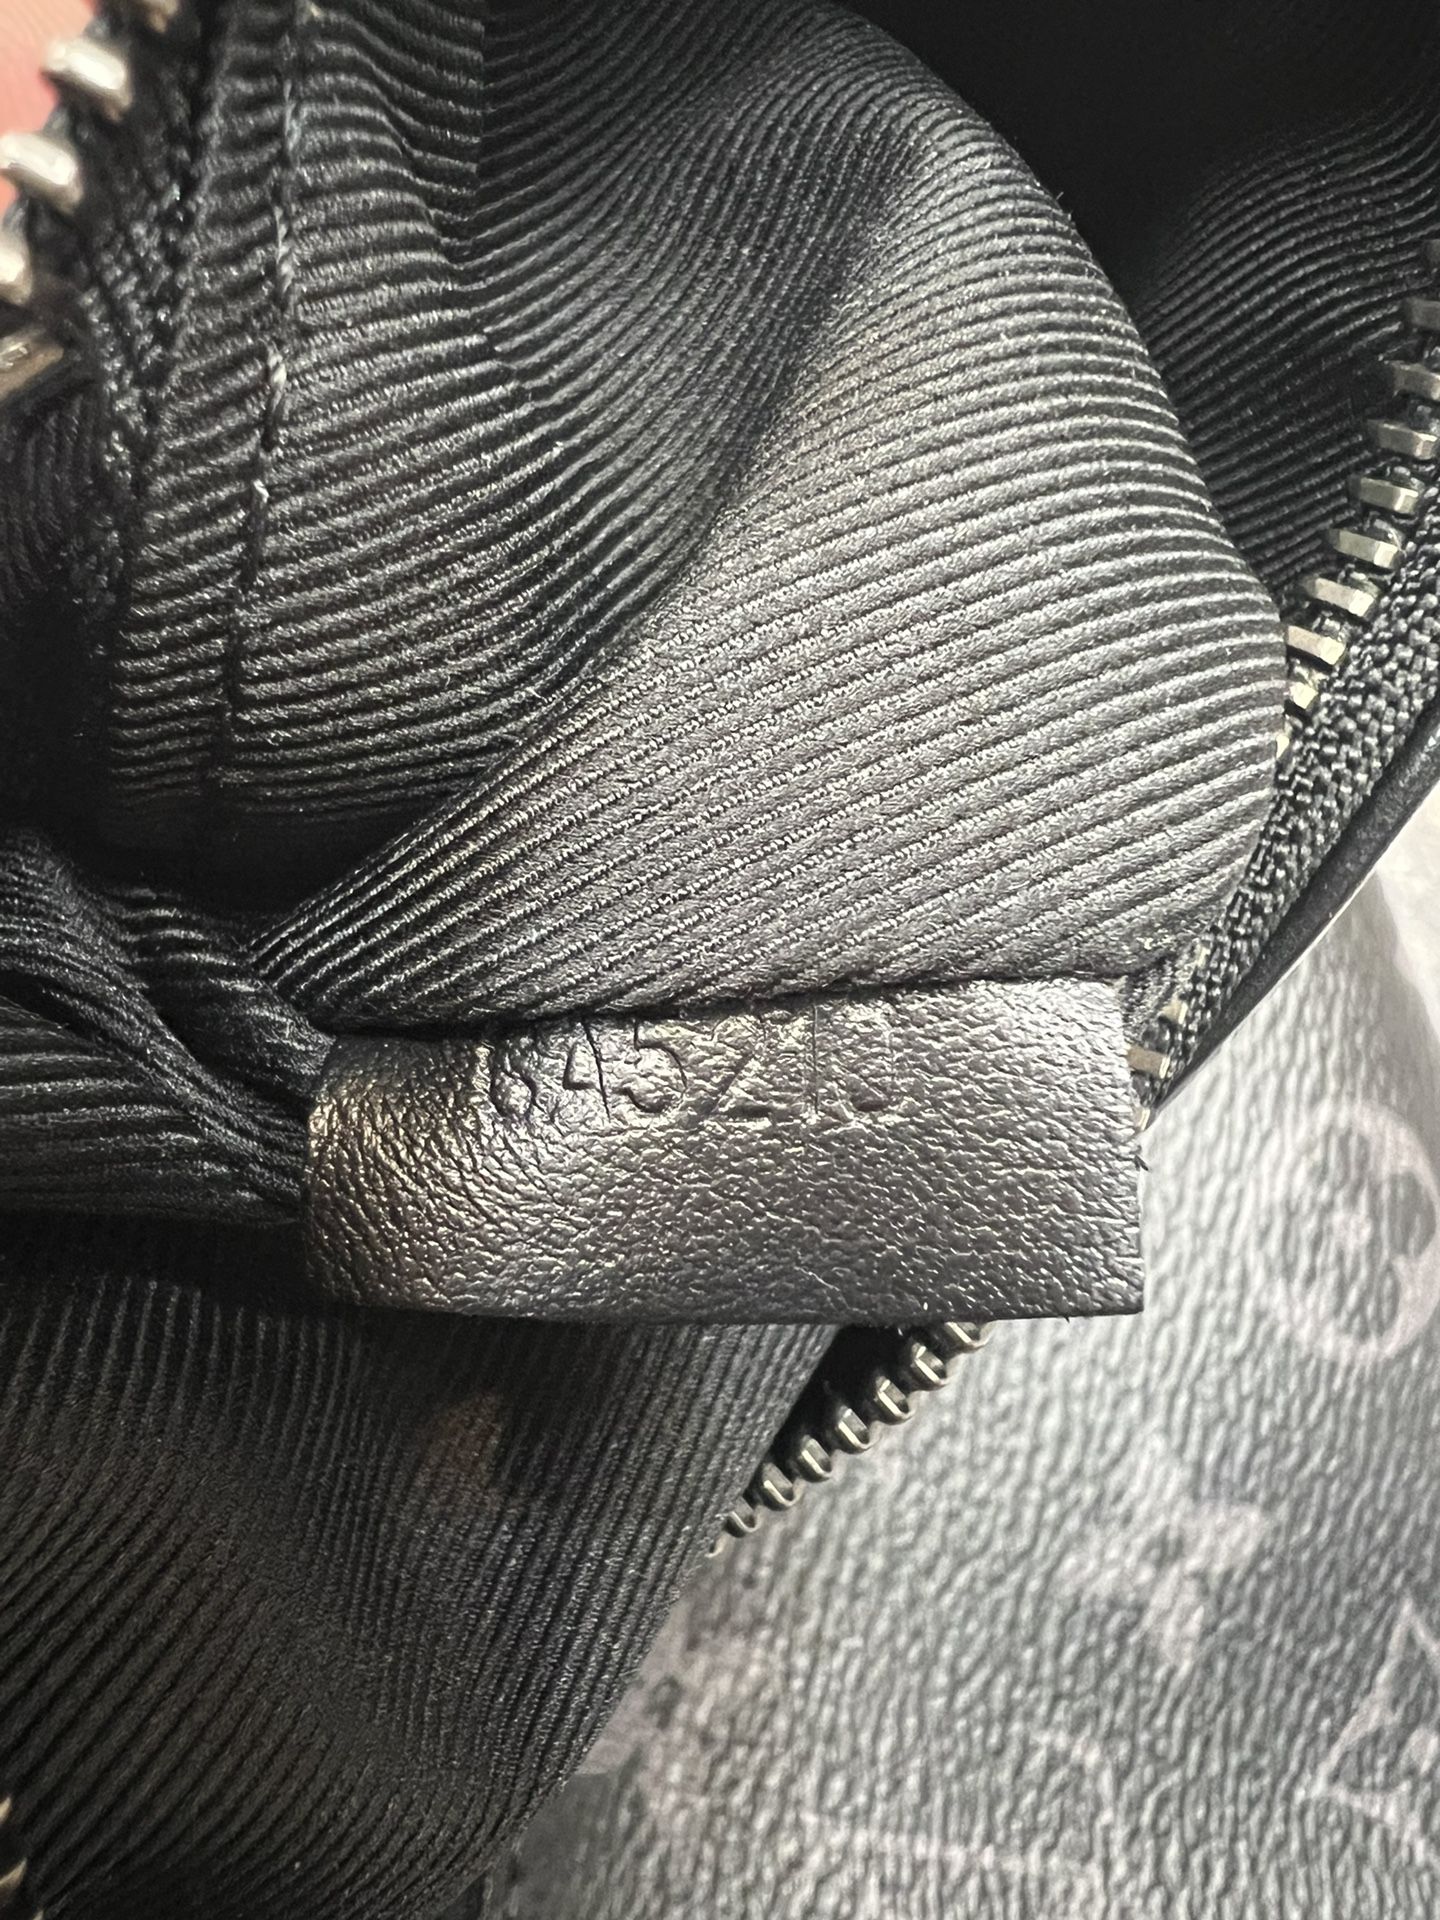 Louis Vuitton BUM BAG Monogram Eclipse Canvas FANNY HIP PACK USED 100%  AUTH. LV